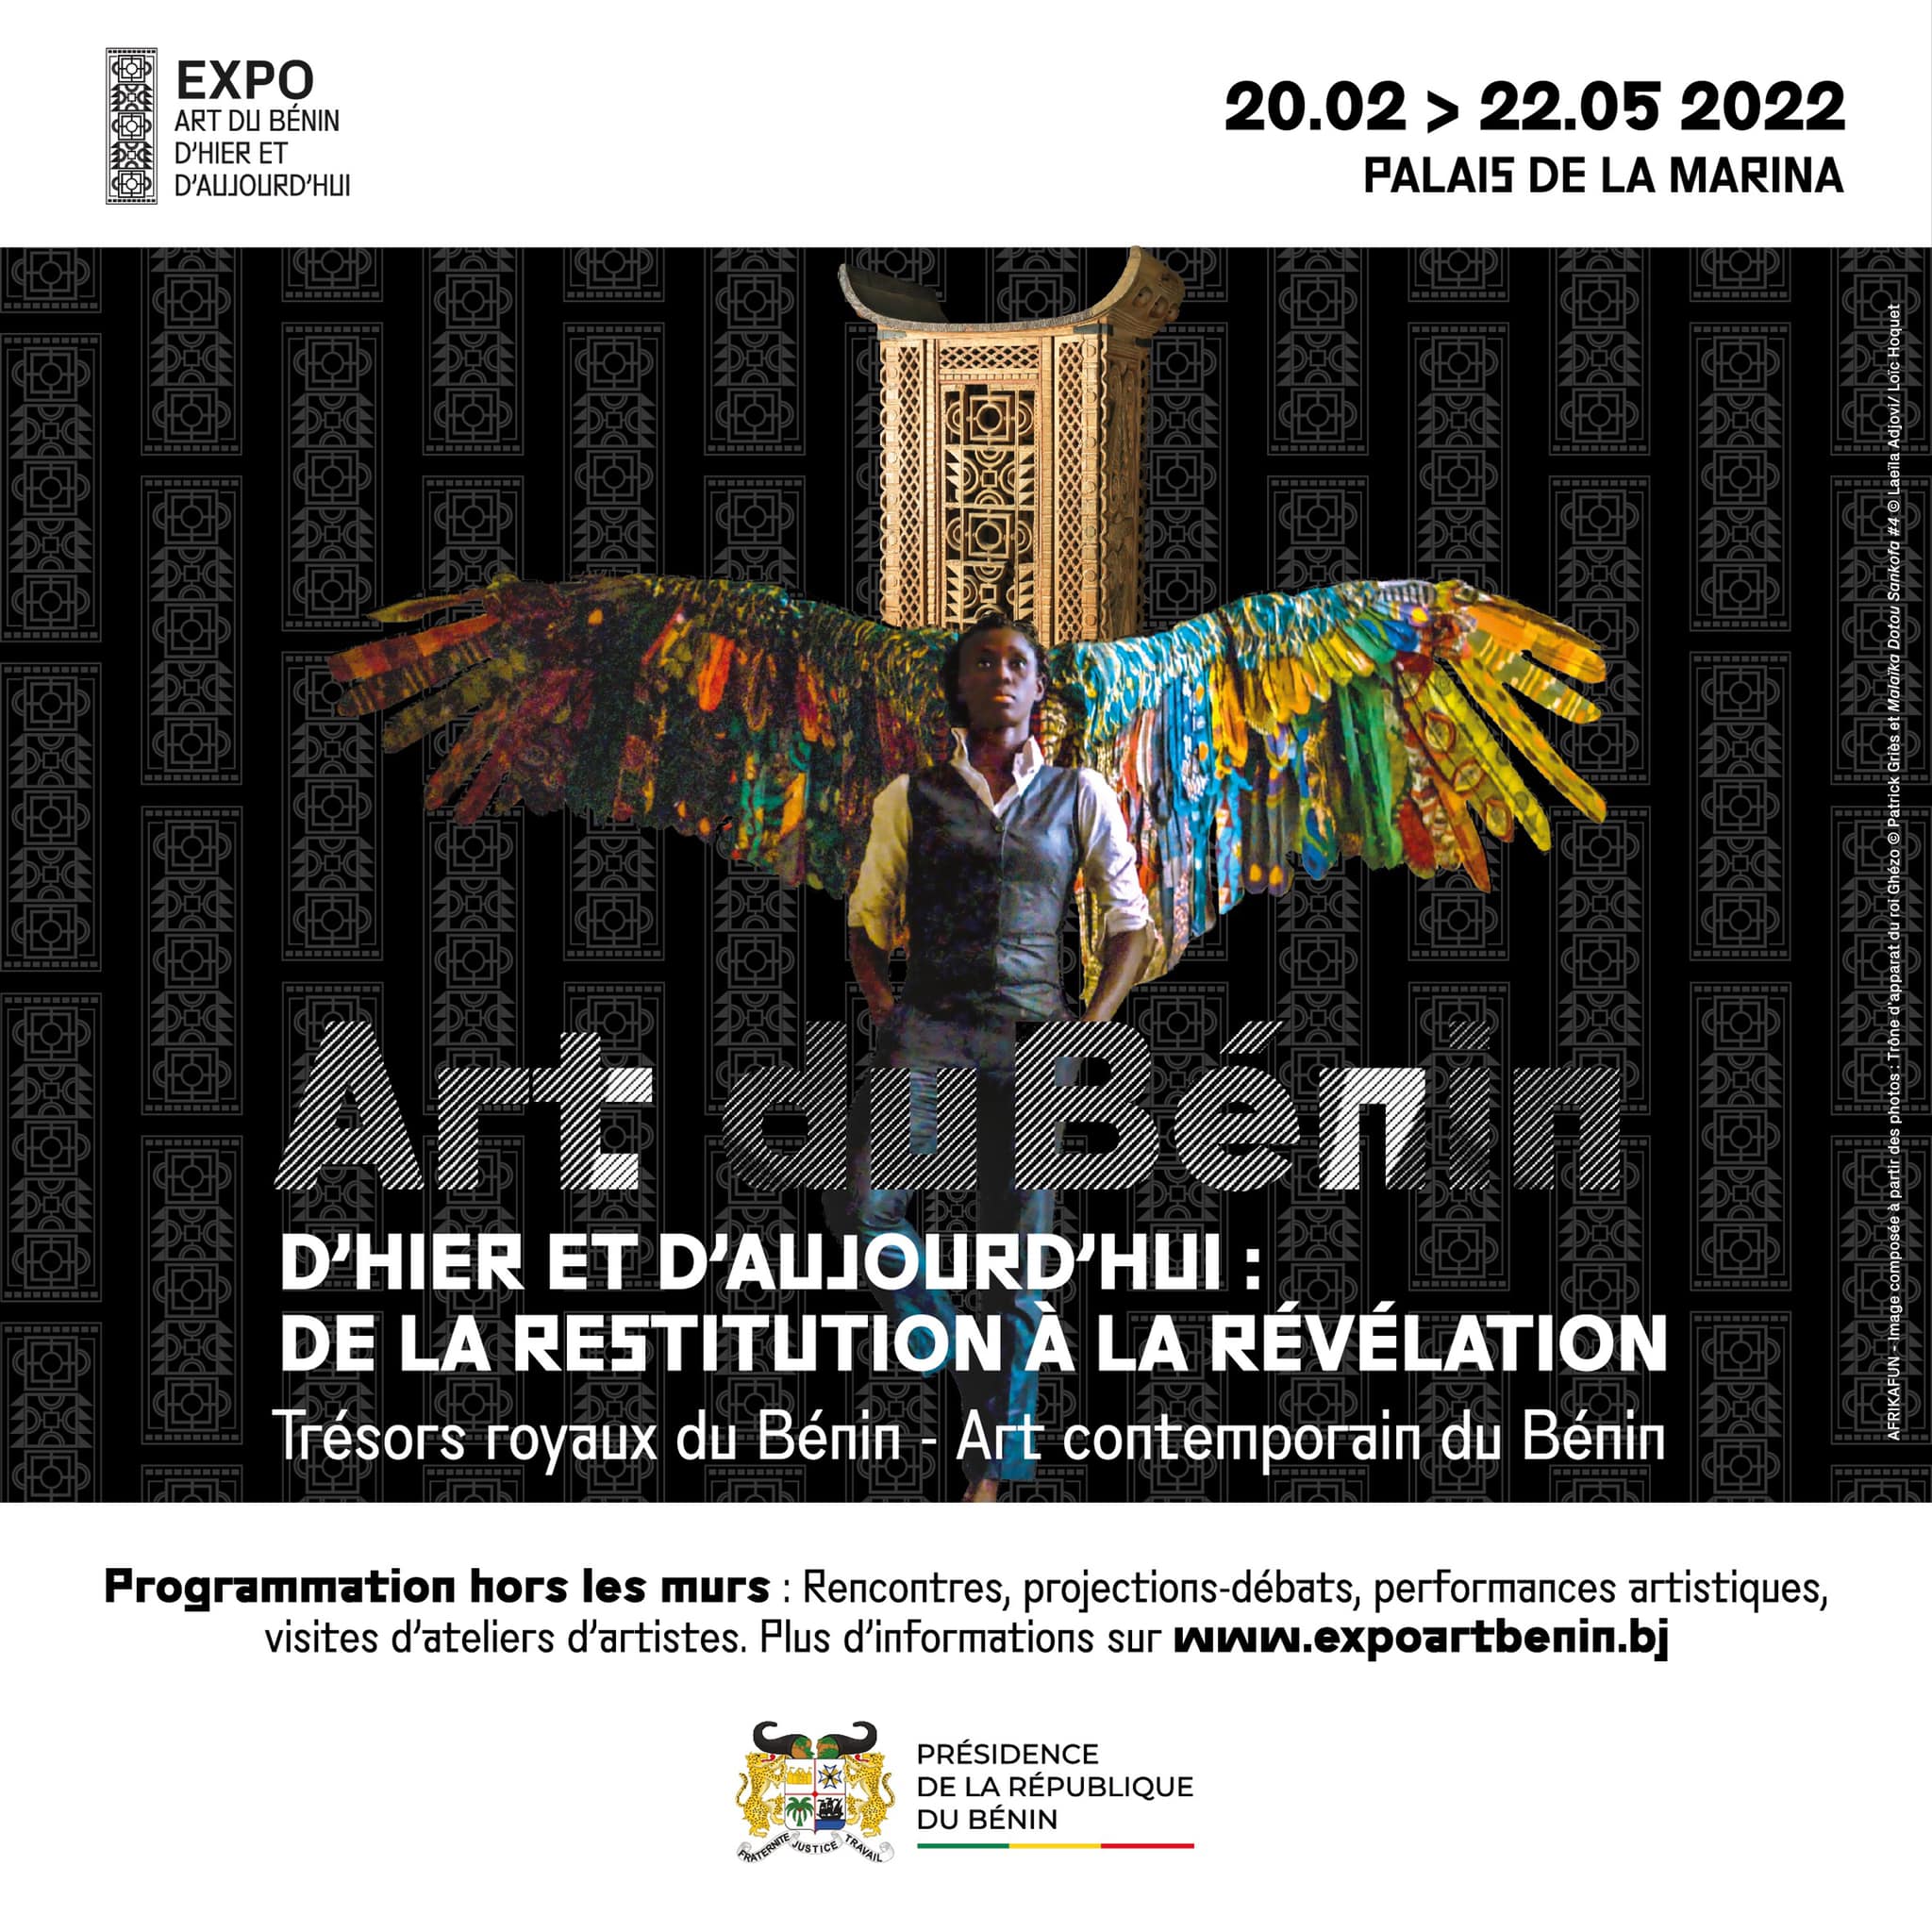 ART DU BÉNIN D'HIER ET AUJOURD'HUI : DE LA RESTITUTION À LA RÉVÉLATION